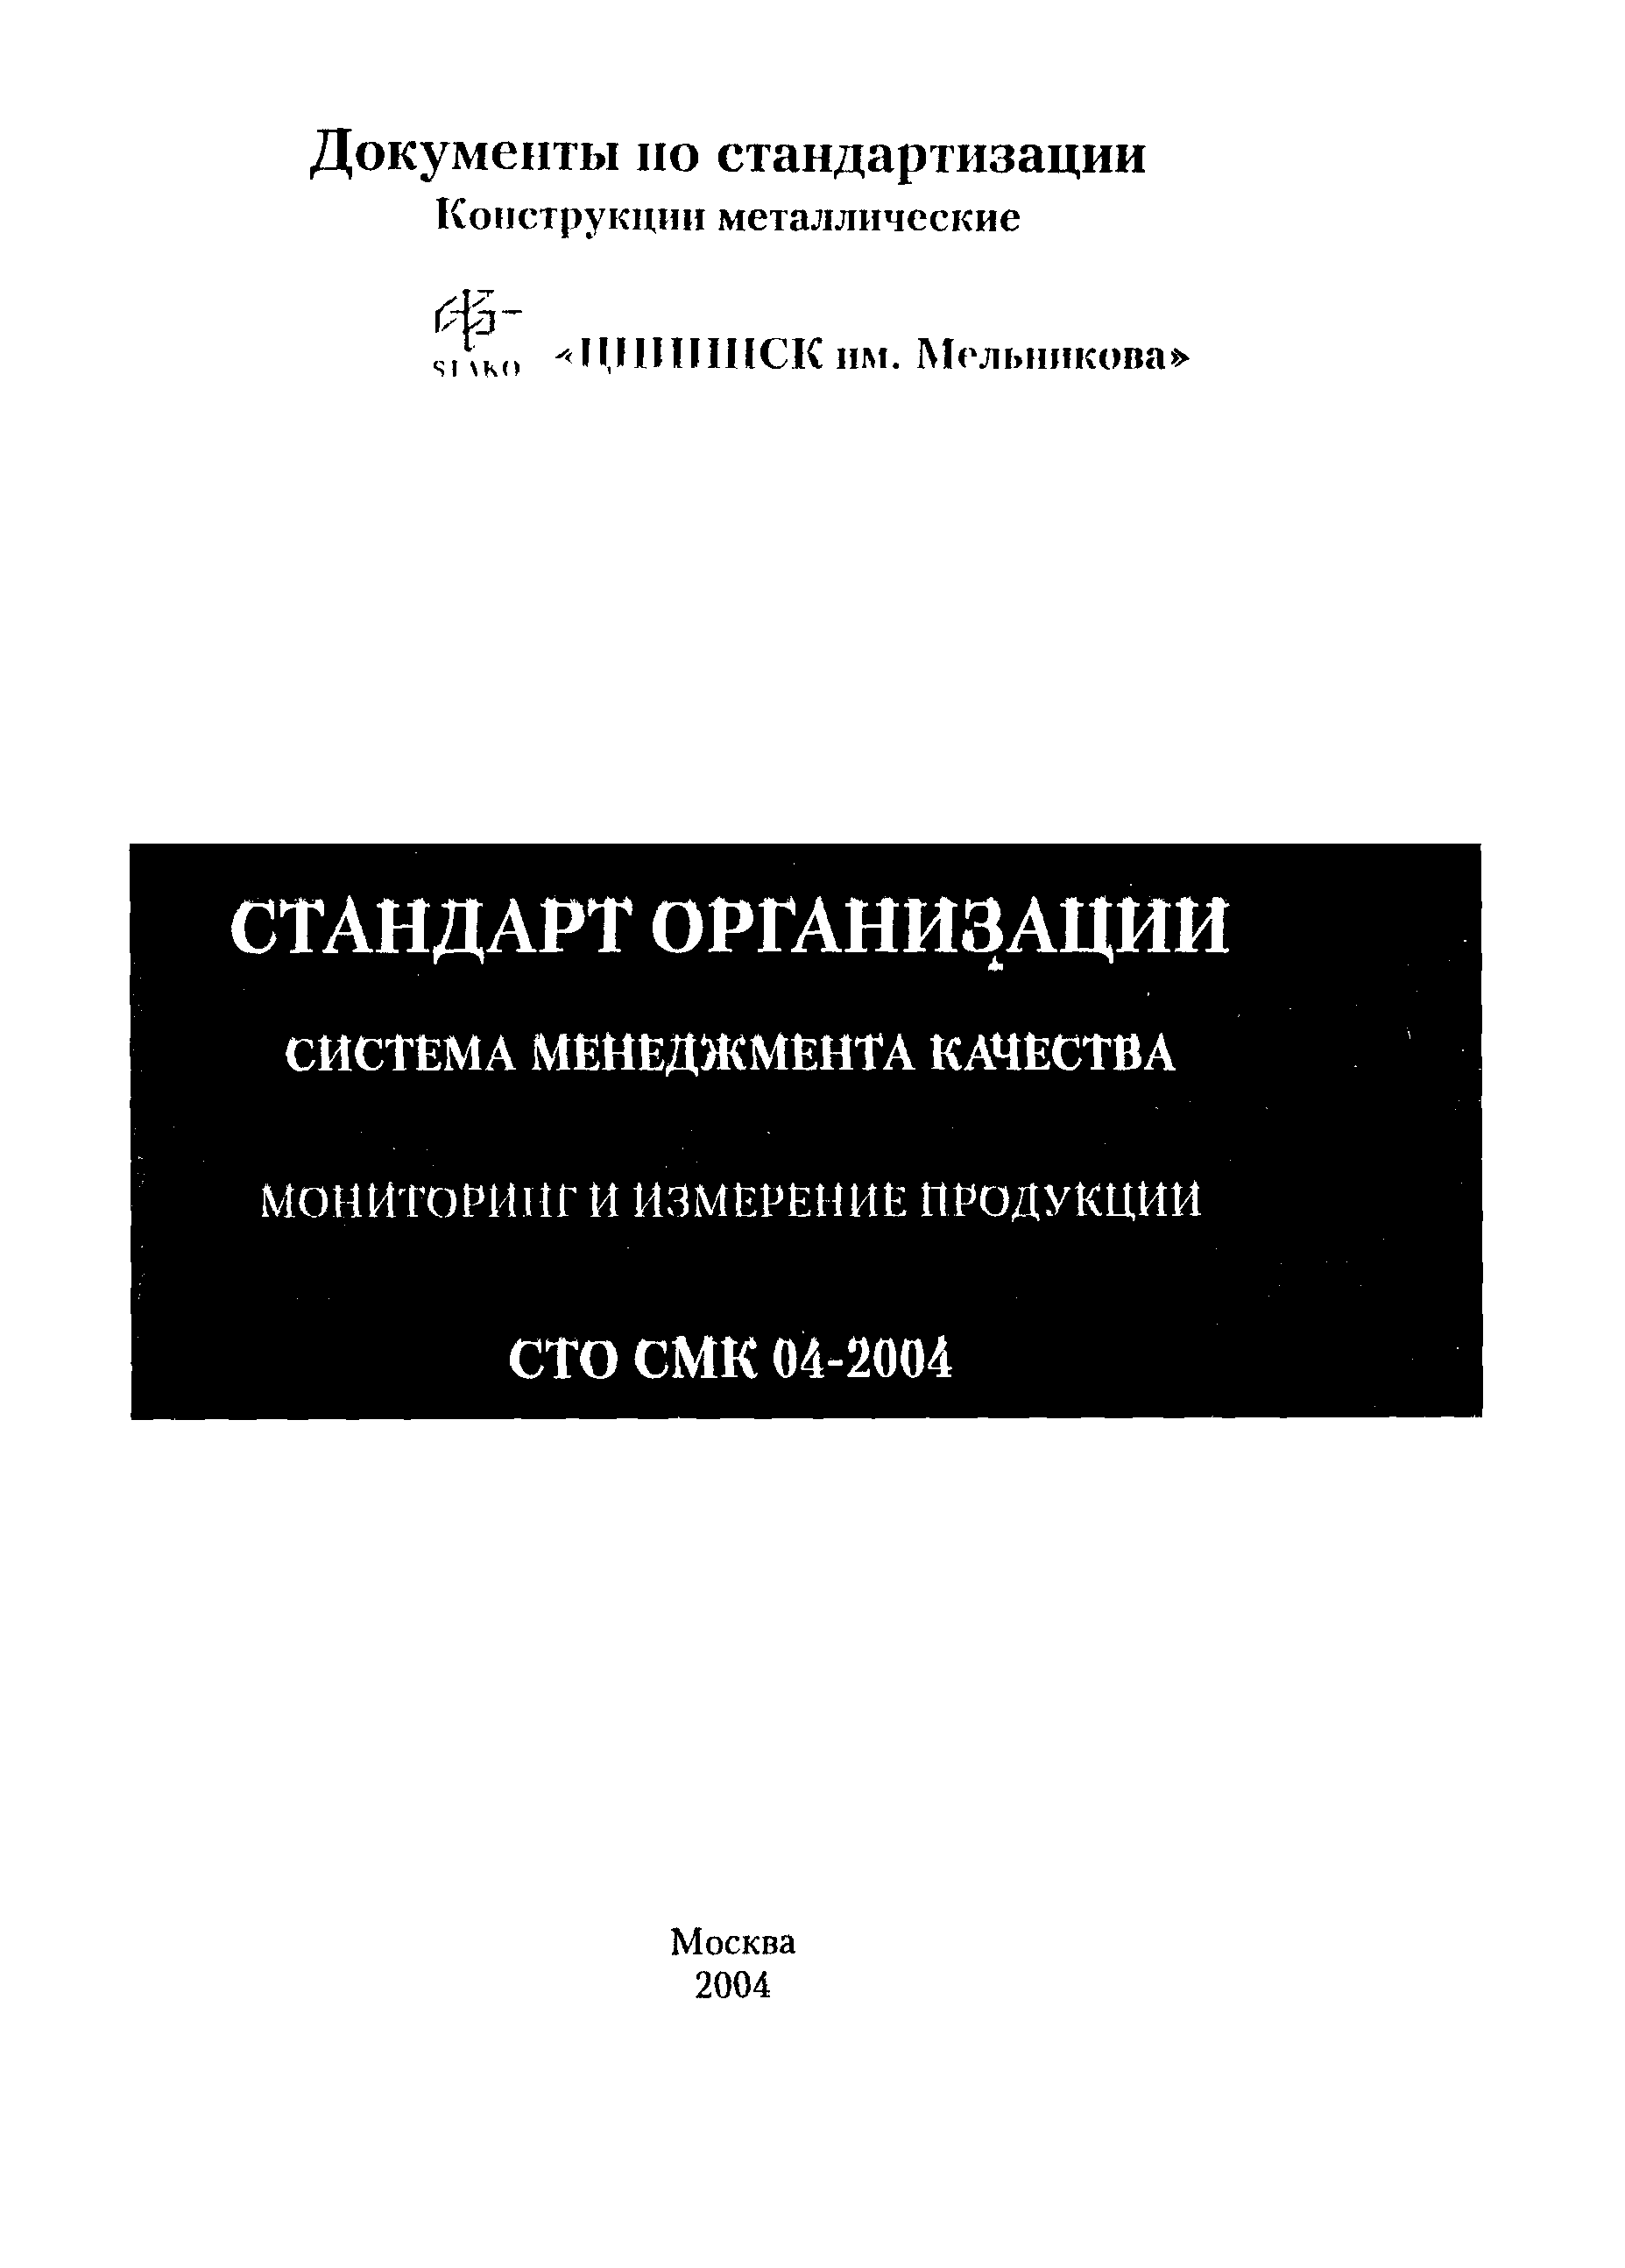 СТО СМК 04-2004